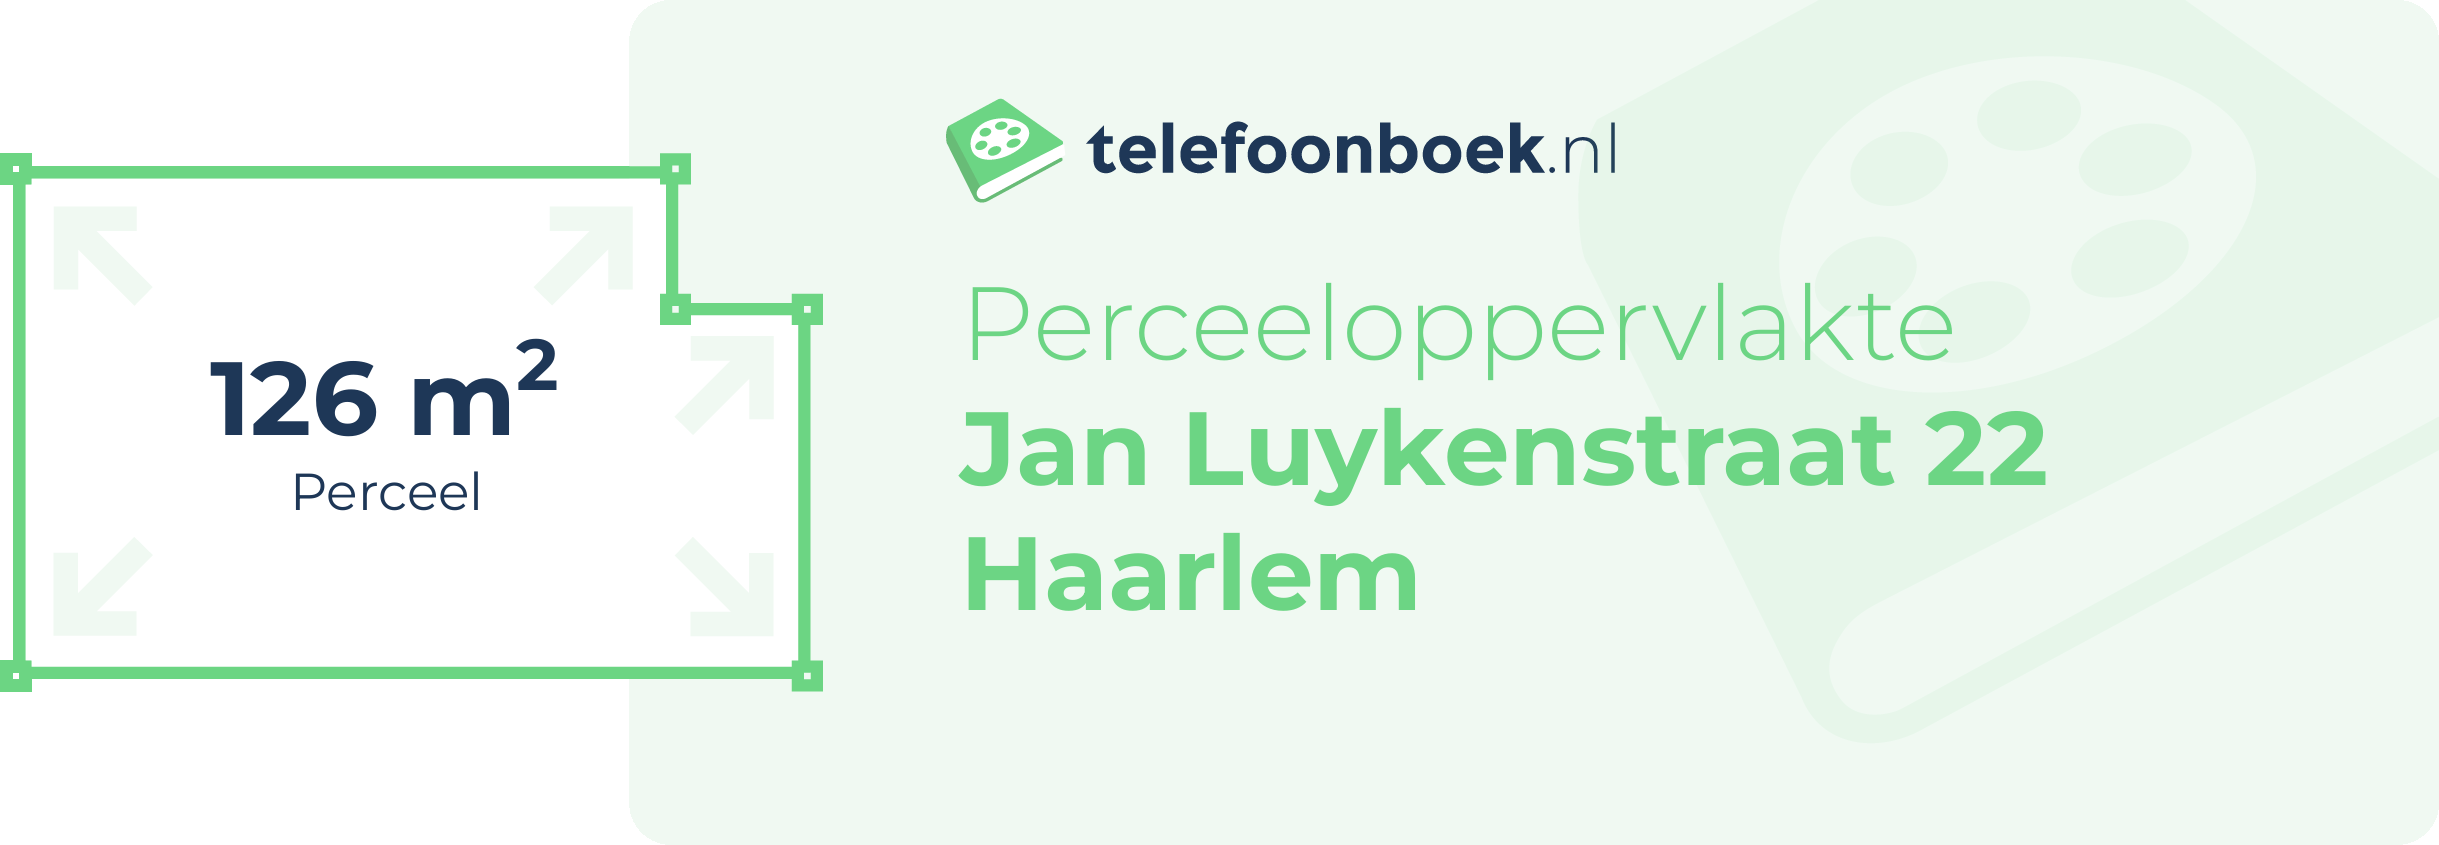 Perceeloppervlakte Jan Luykenstraat 22 Haarlem